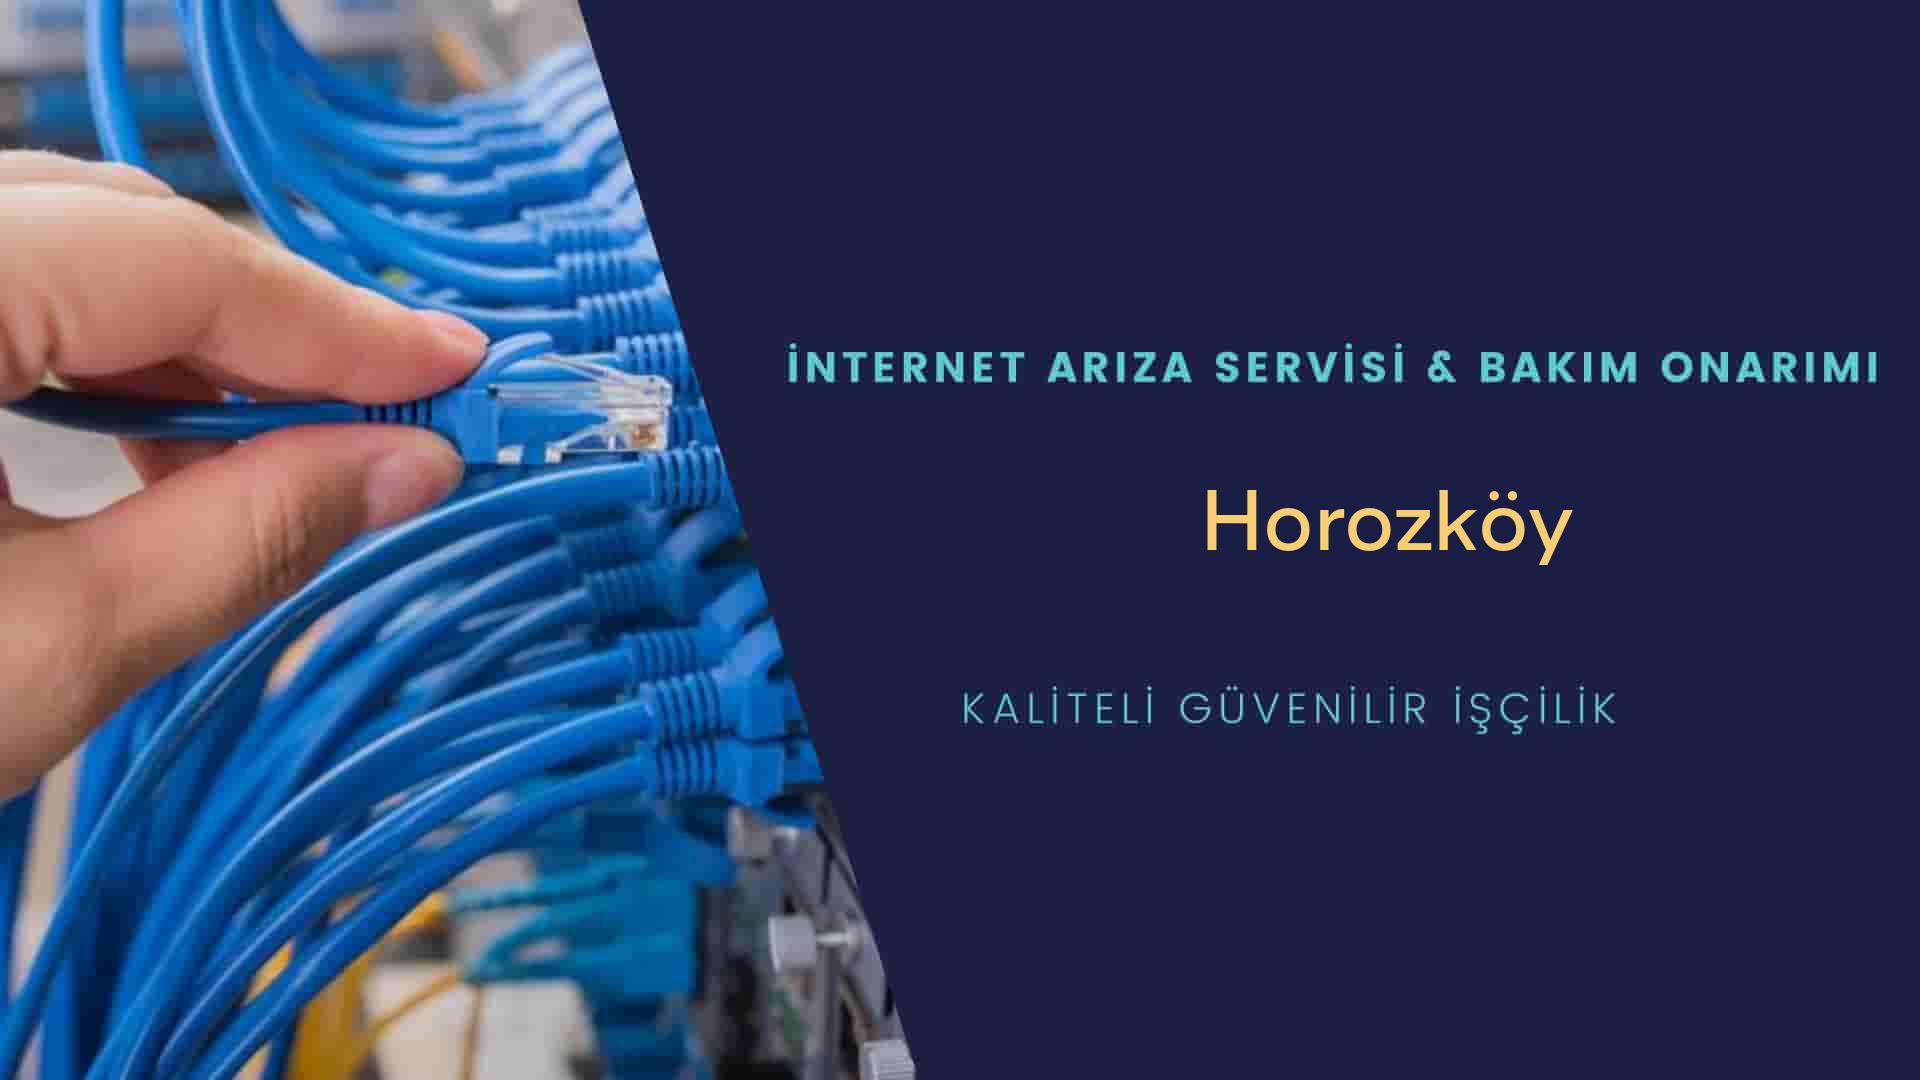 Horozköy internet kablosu çekimi yapan yerler veya elektrikçiler mi? arıyorsunuz doğru yerdesiniz o zaman sizlere 7/24 yardımcı olacak profesyonel ustalarımız bir telefon kadar yakındır size.